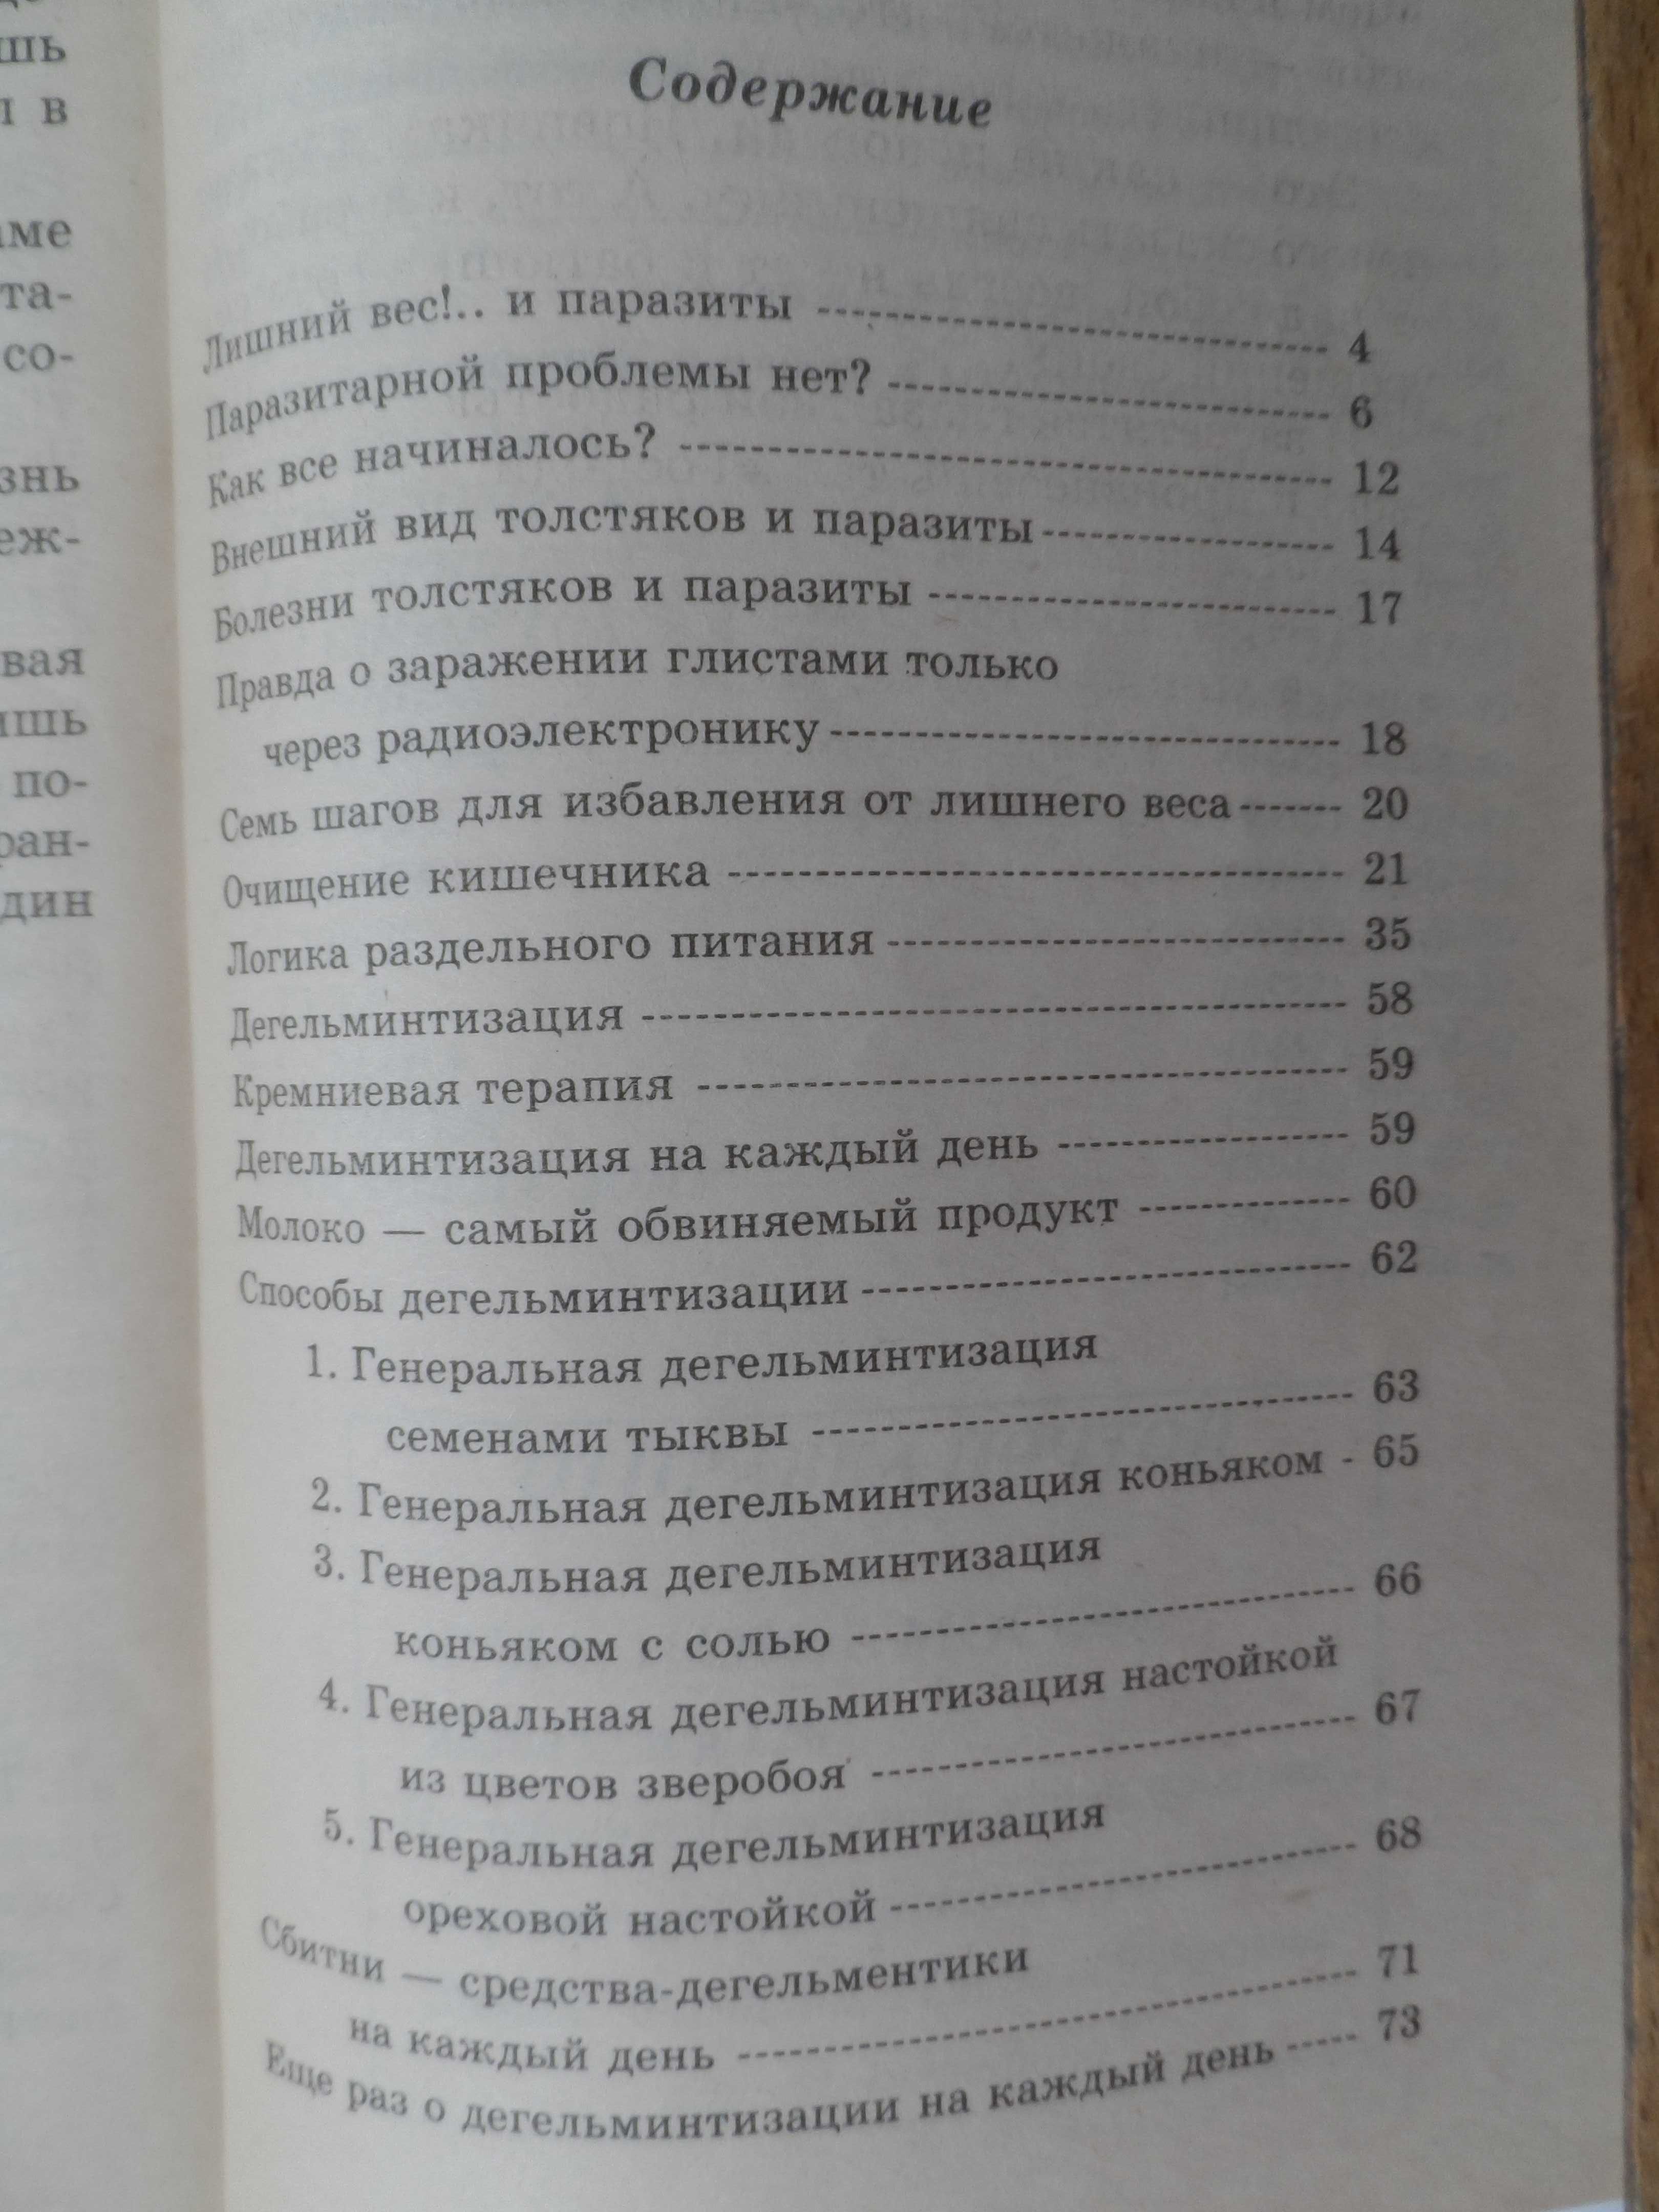 Книга Надежды Семеновой "Лишний вес".